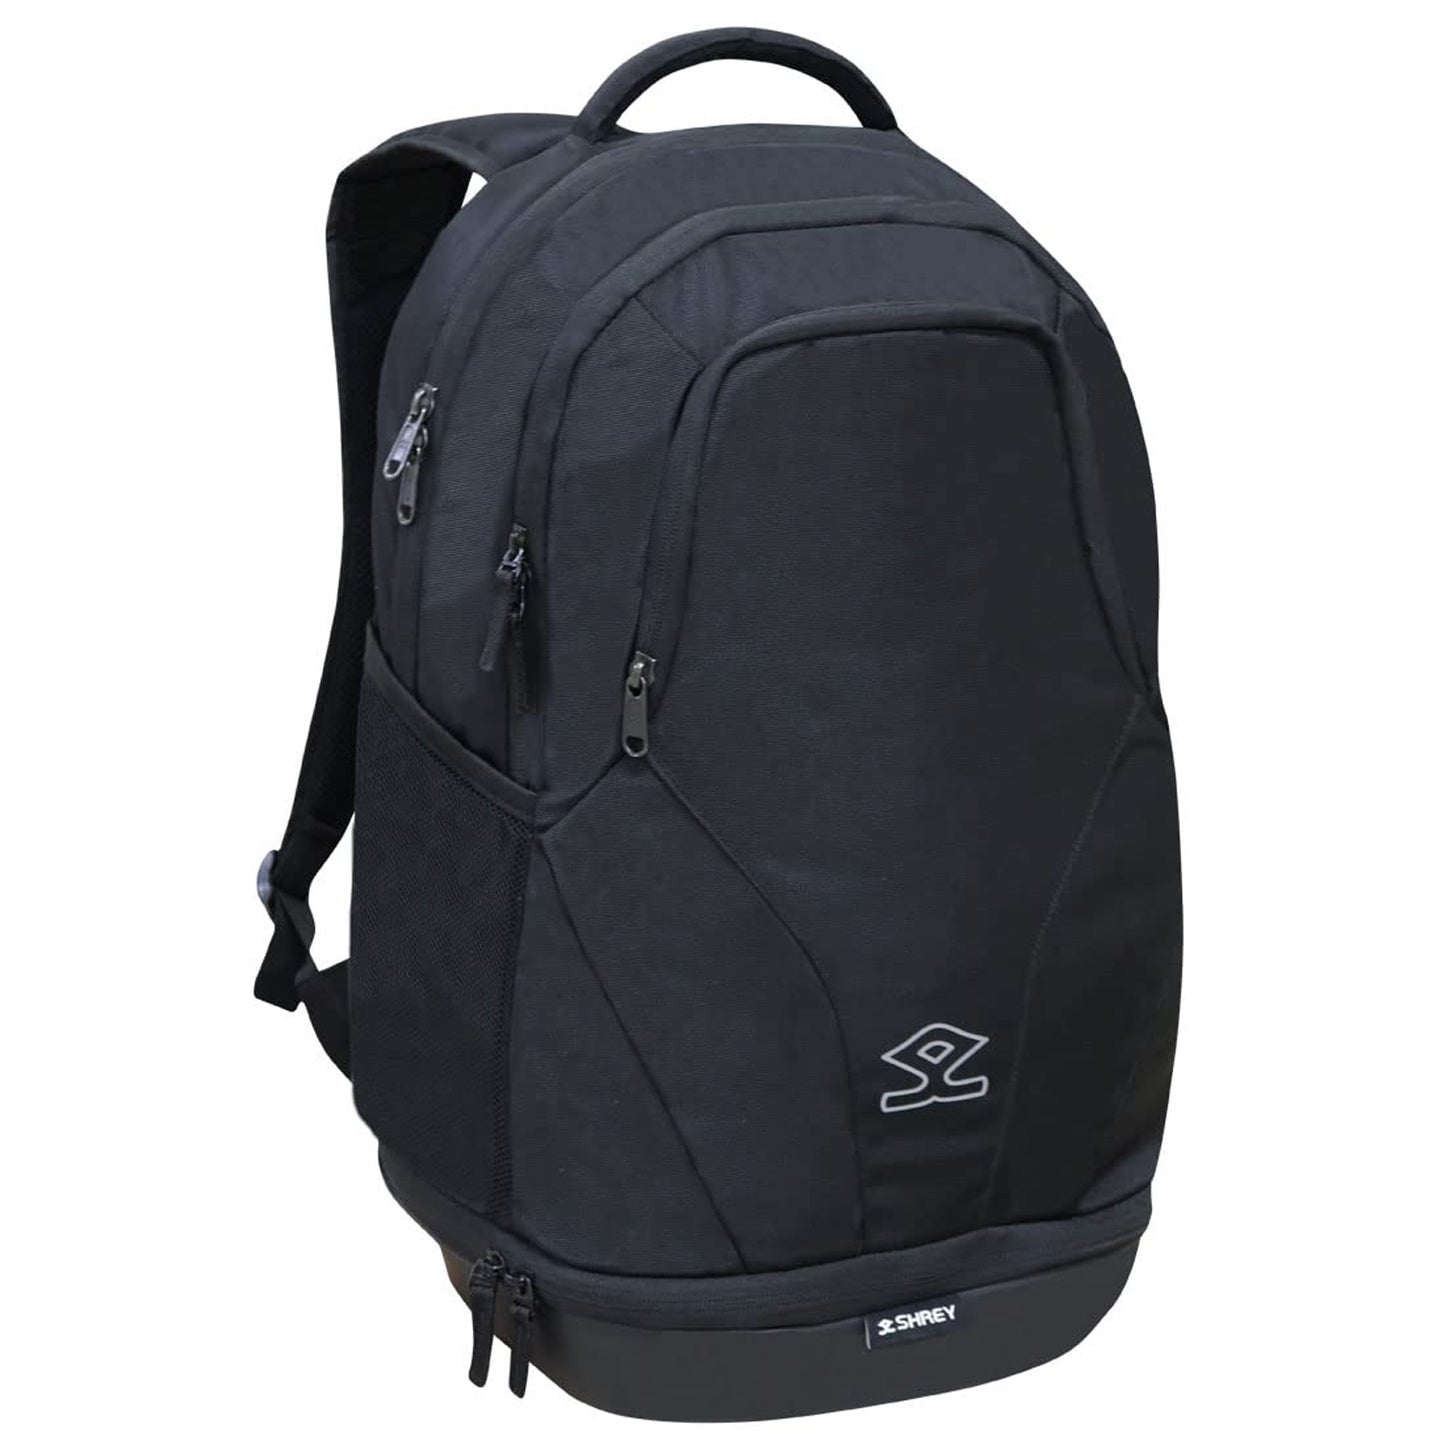 Shrey Armor Backpack Bag, Black - Best Price online Prokicksports.com